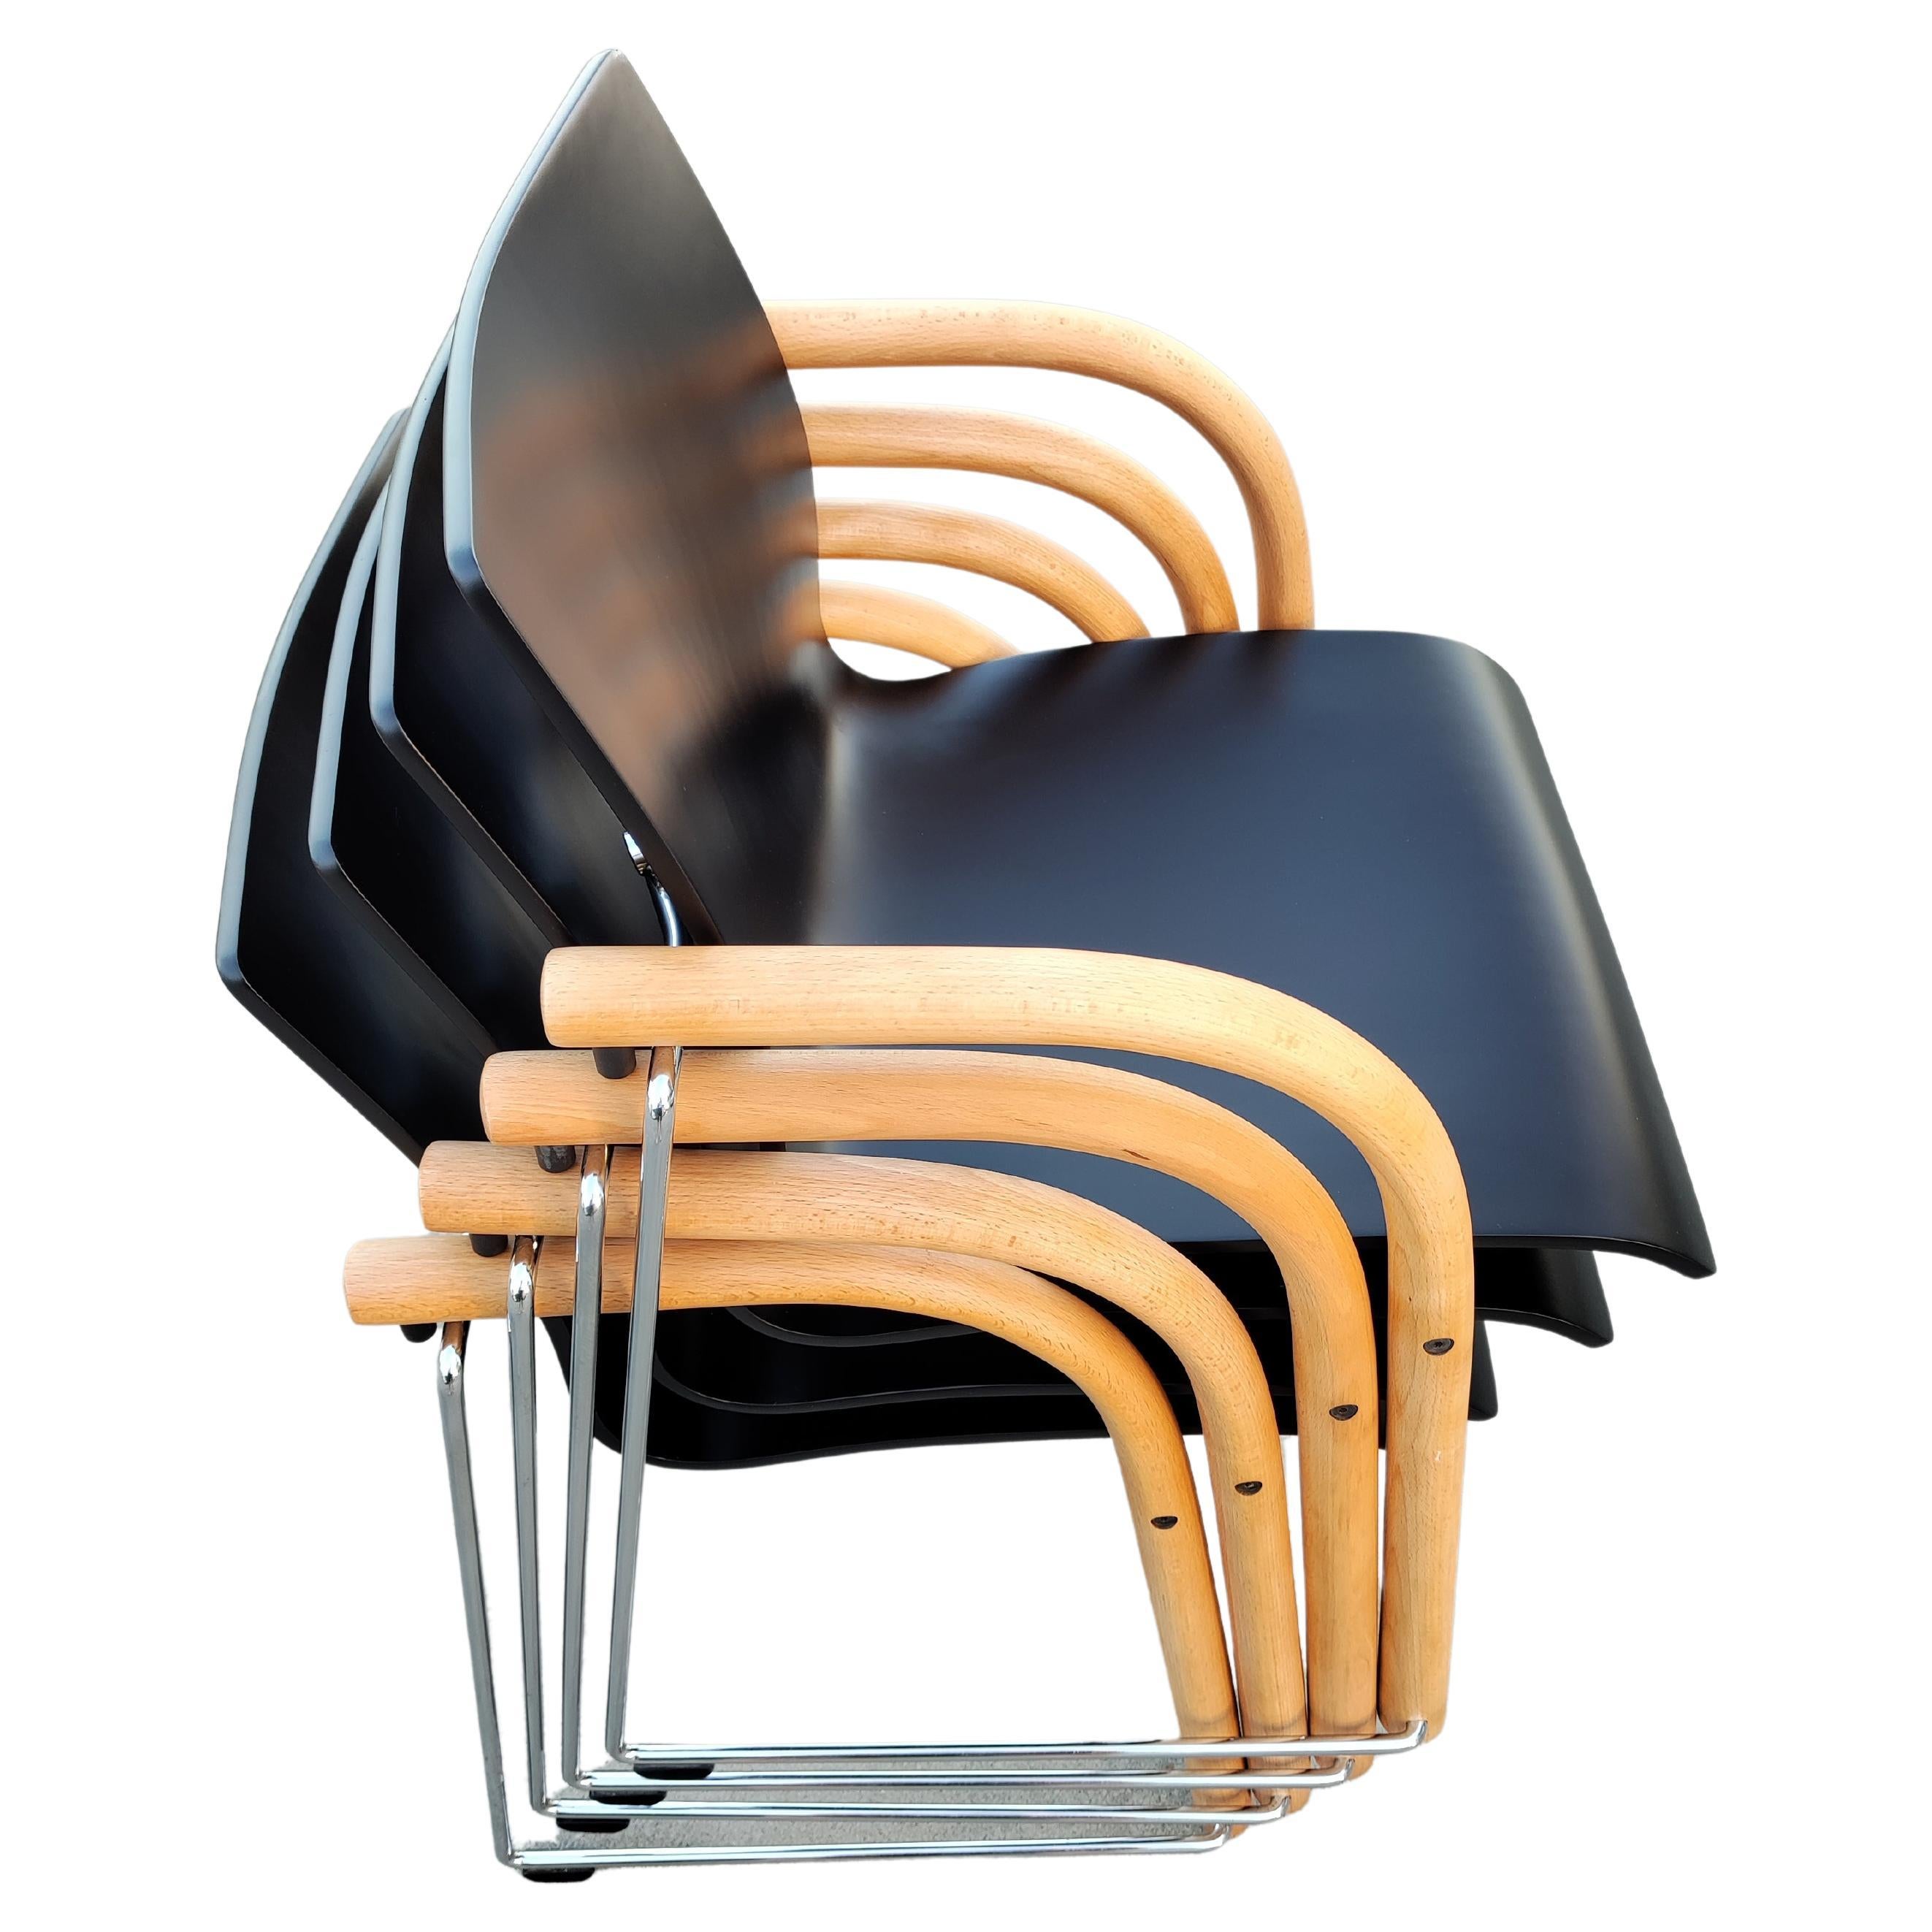 In diesem Angebot finden Sie einen Satz von 4 Thonet Esszimmerstühlen Modell S320, entworfen von Wulf Schneider und Ulrich Bohme. Die Stühle sind stapelbar. Vollständig renoviert.

Beim Kauf werden die Stühle sorgfältig eingewickelt und so verpackt,